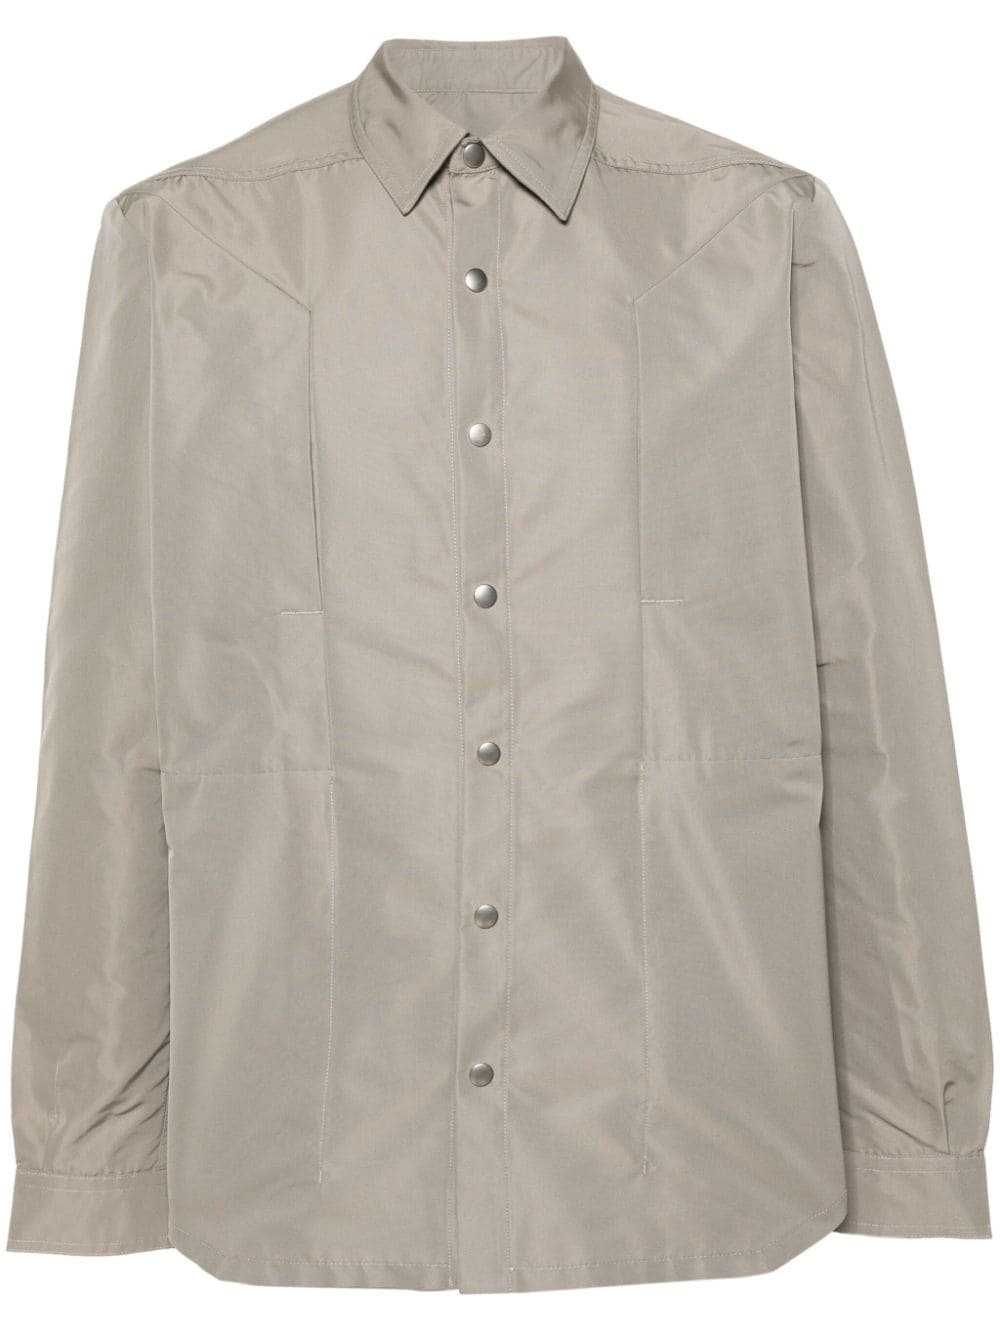 Fogpocket shirt jacket - 1